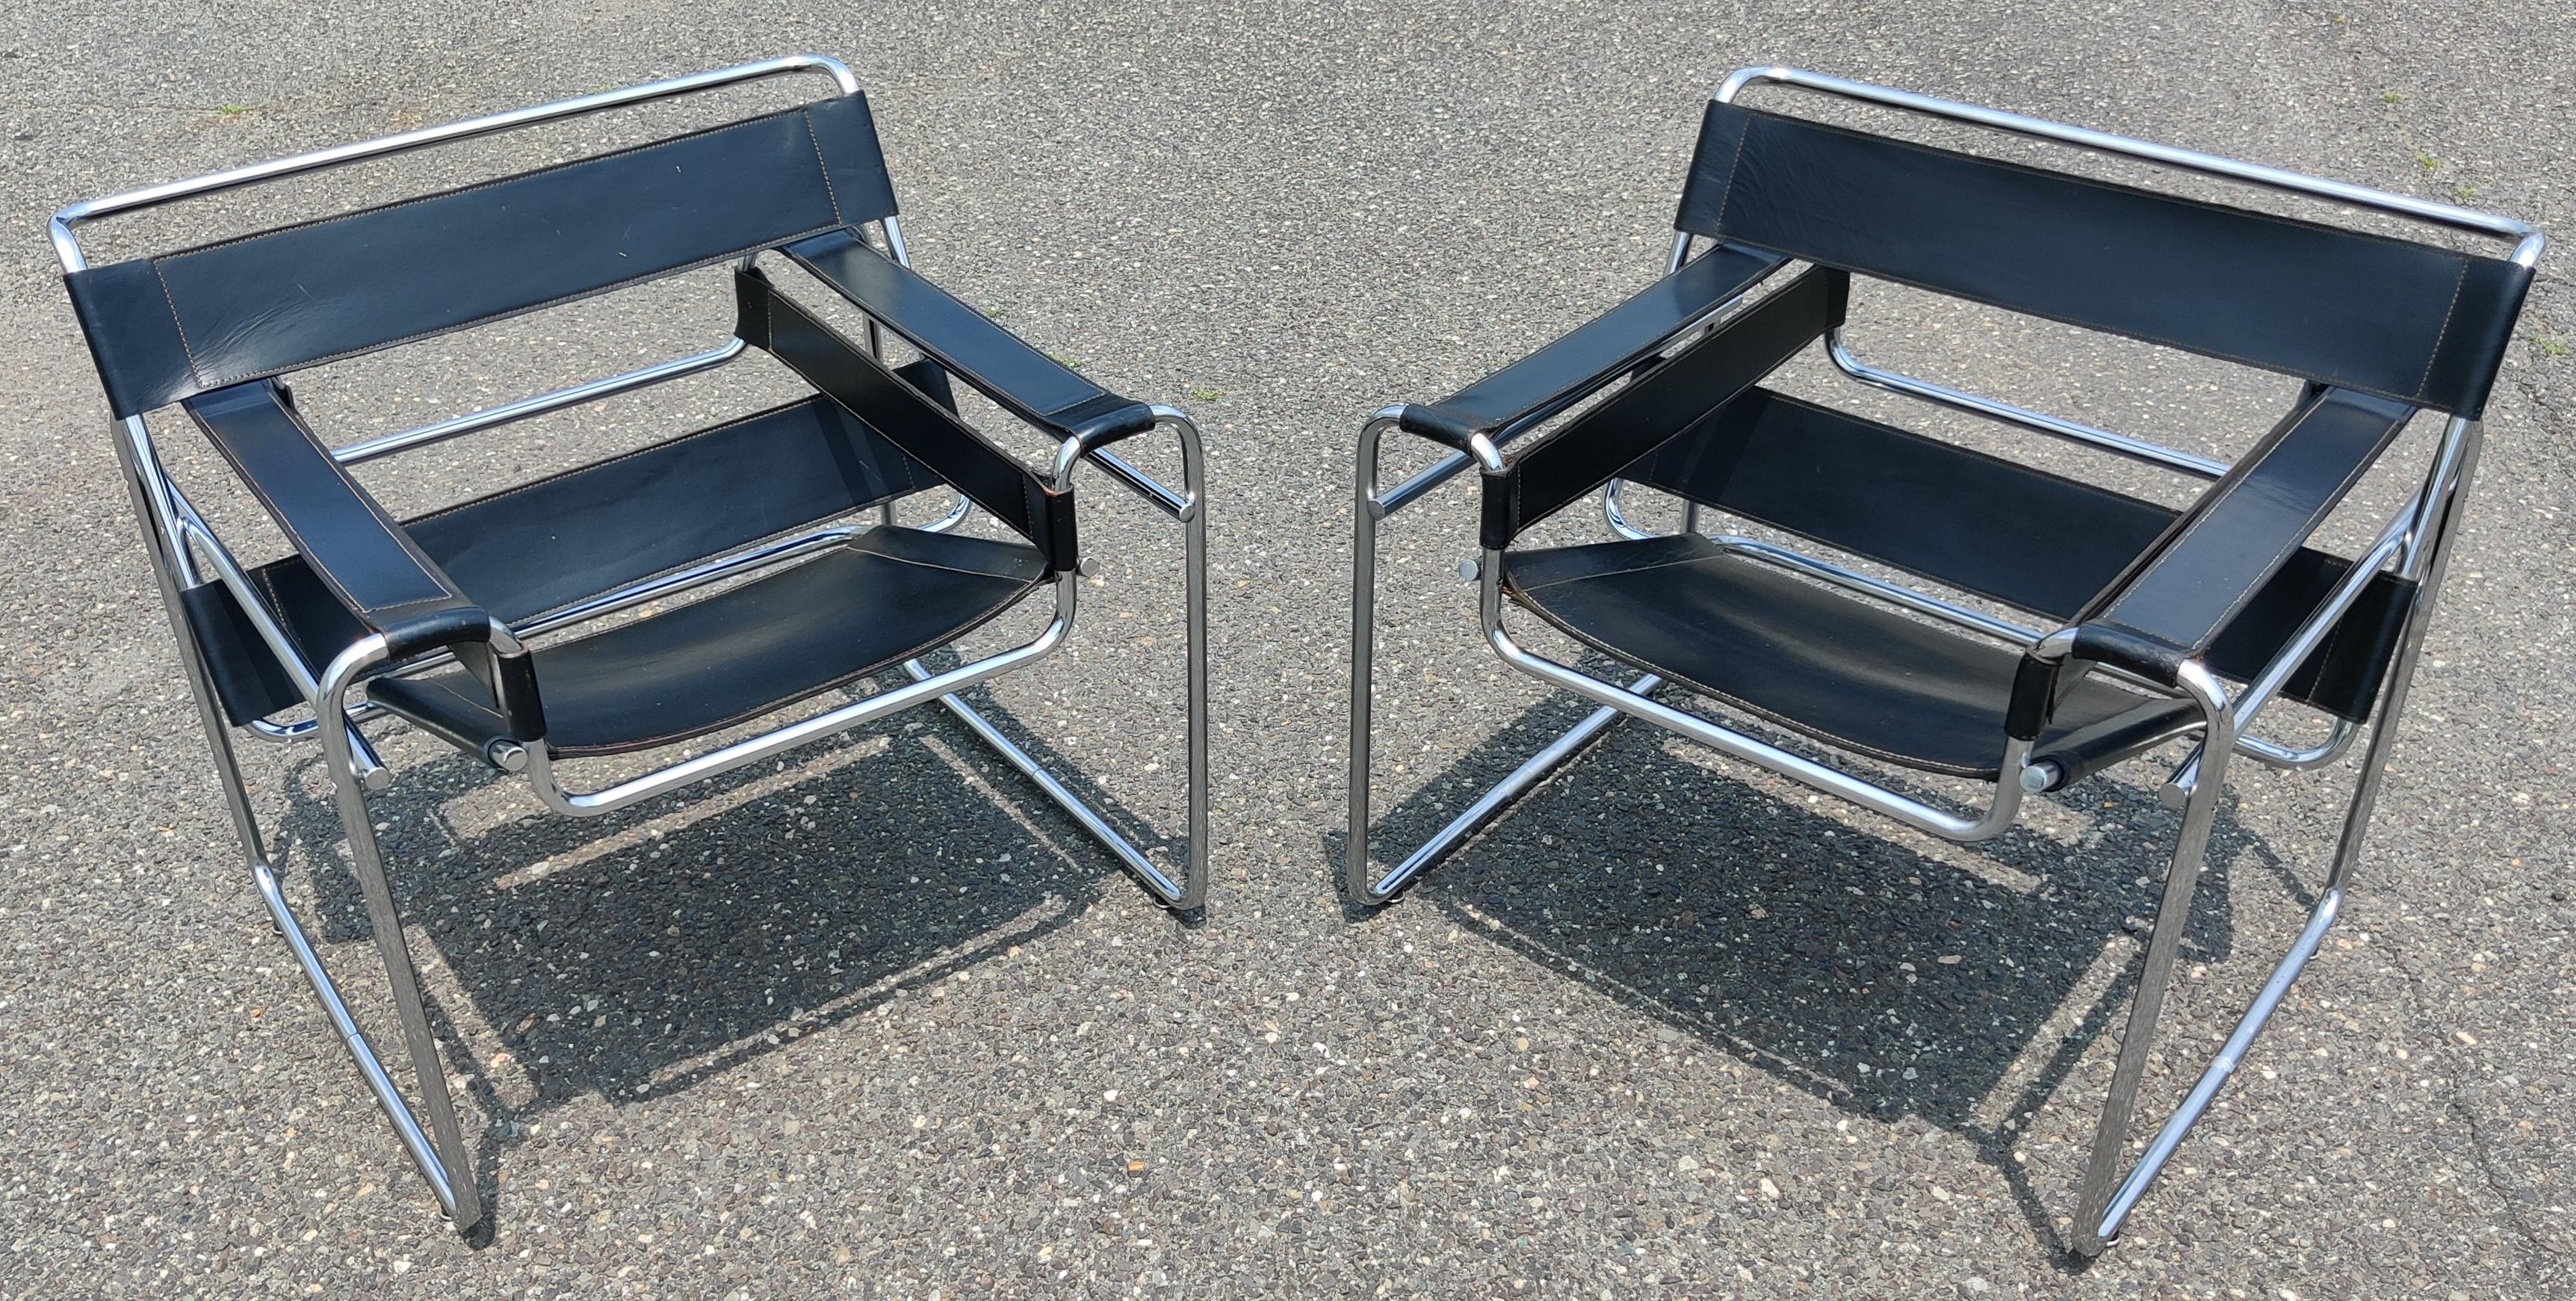 Rare paire de chaises de salon modèle B3 signées 1977 Marcel Breuer pour Knoll, également connues sous le nom de chaises Wassily. Conçu à l'origine pour l'artiste du Bauhaus Wassily Kandinsky et nommé d'après lui, vers 1926. Ces chaises datent de